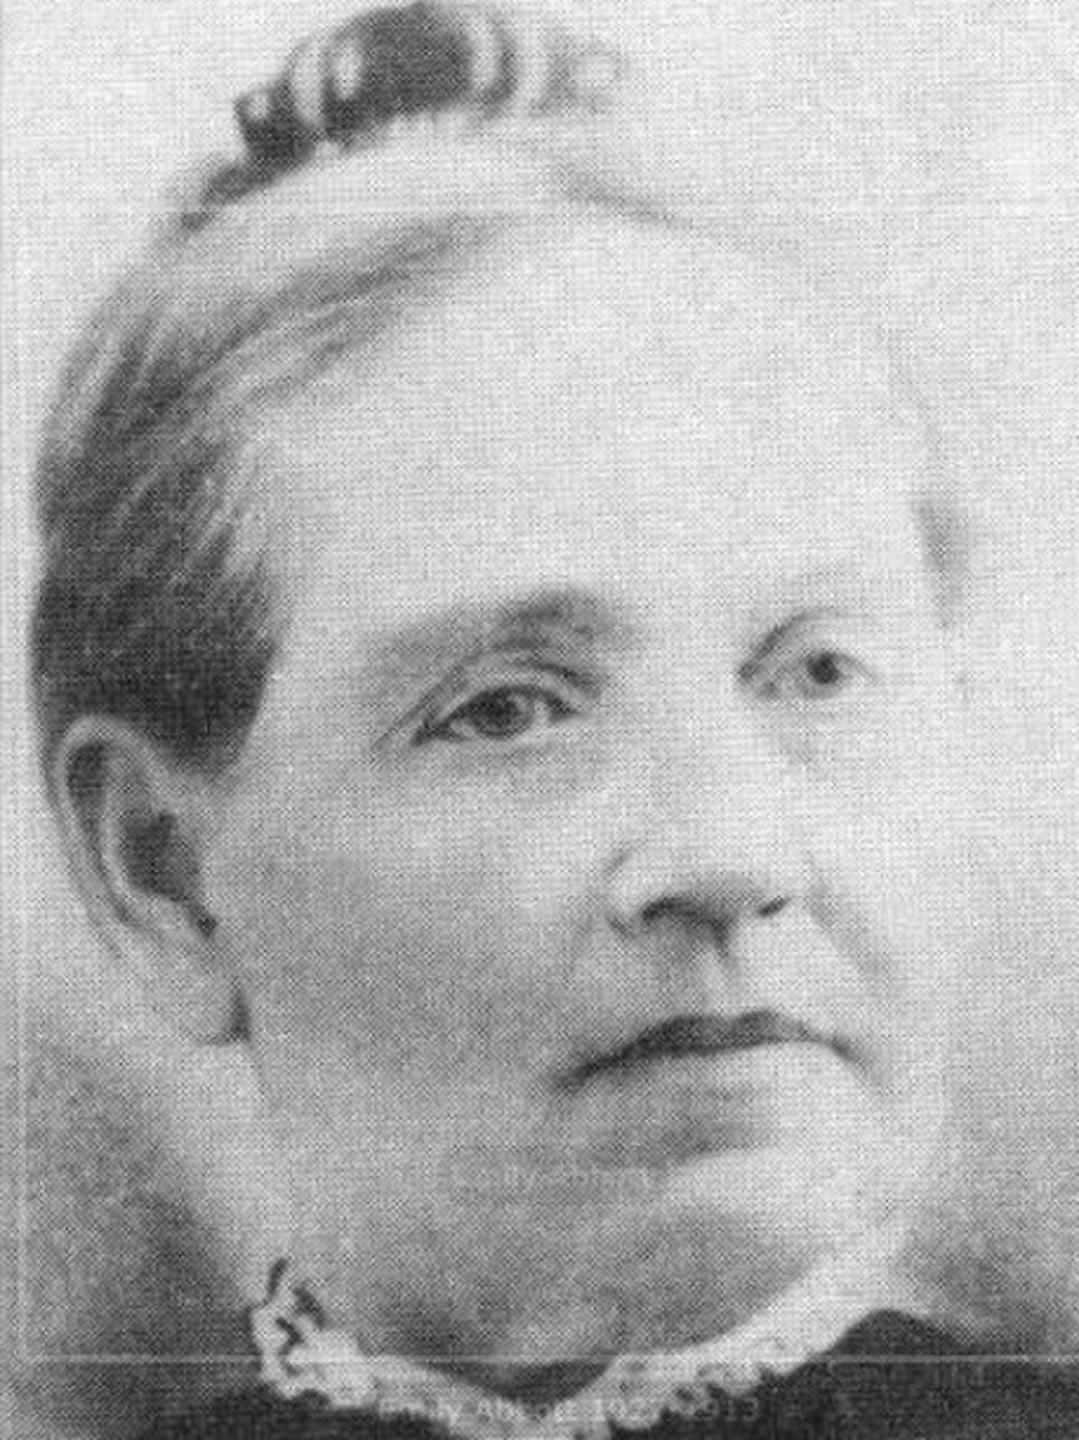 Emily Abbott (1827 - 1913) Profile